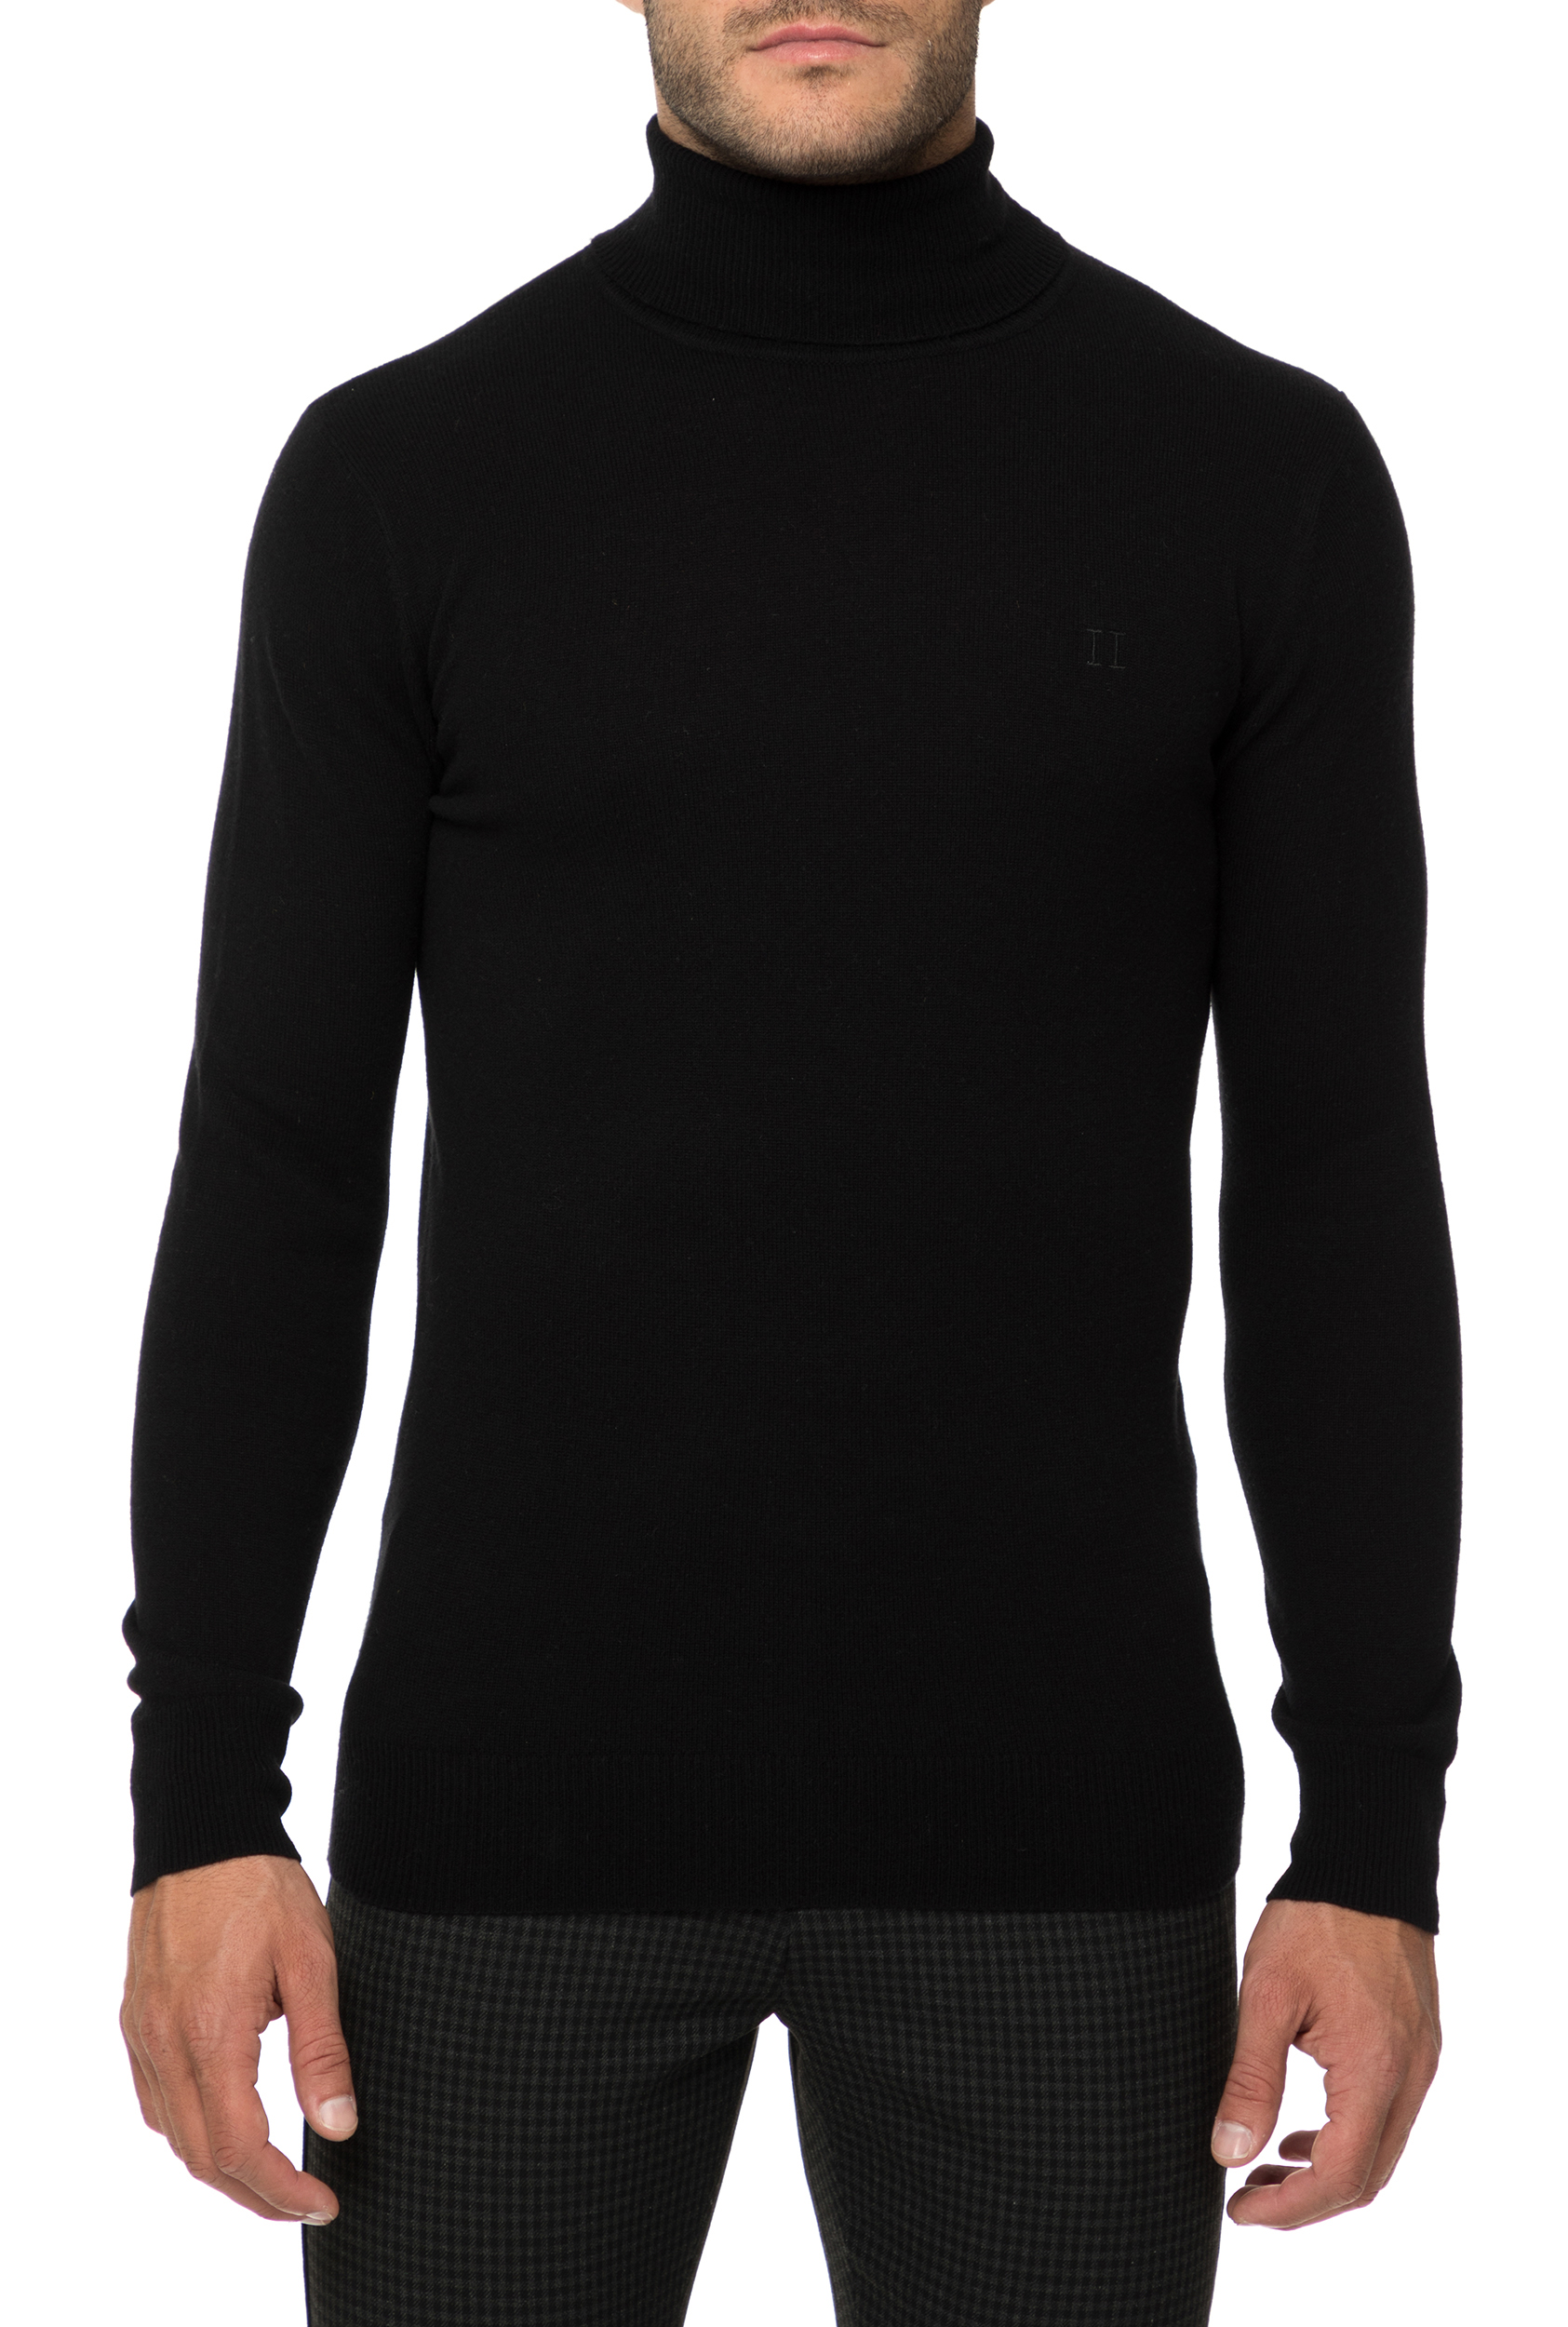 Ανδρικά/Ρούχα/Πλεκτά-Ζακέτες/Μπλούζες LES DEUX - Ανδρική ζιβάγκο μπλούζα LES DEUX μαύρη